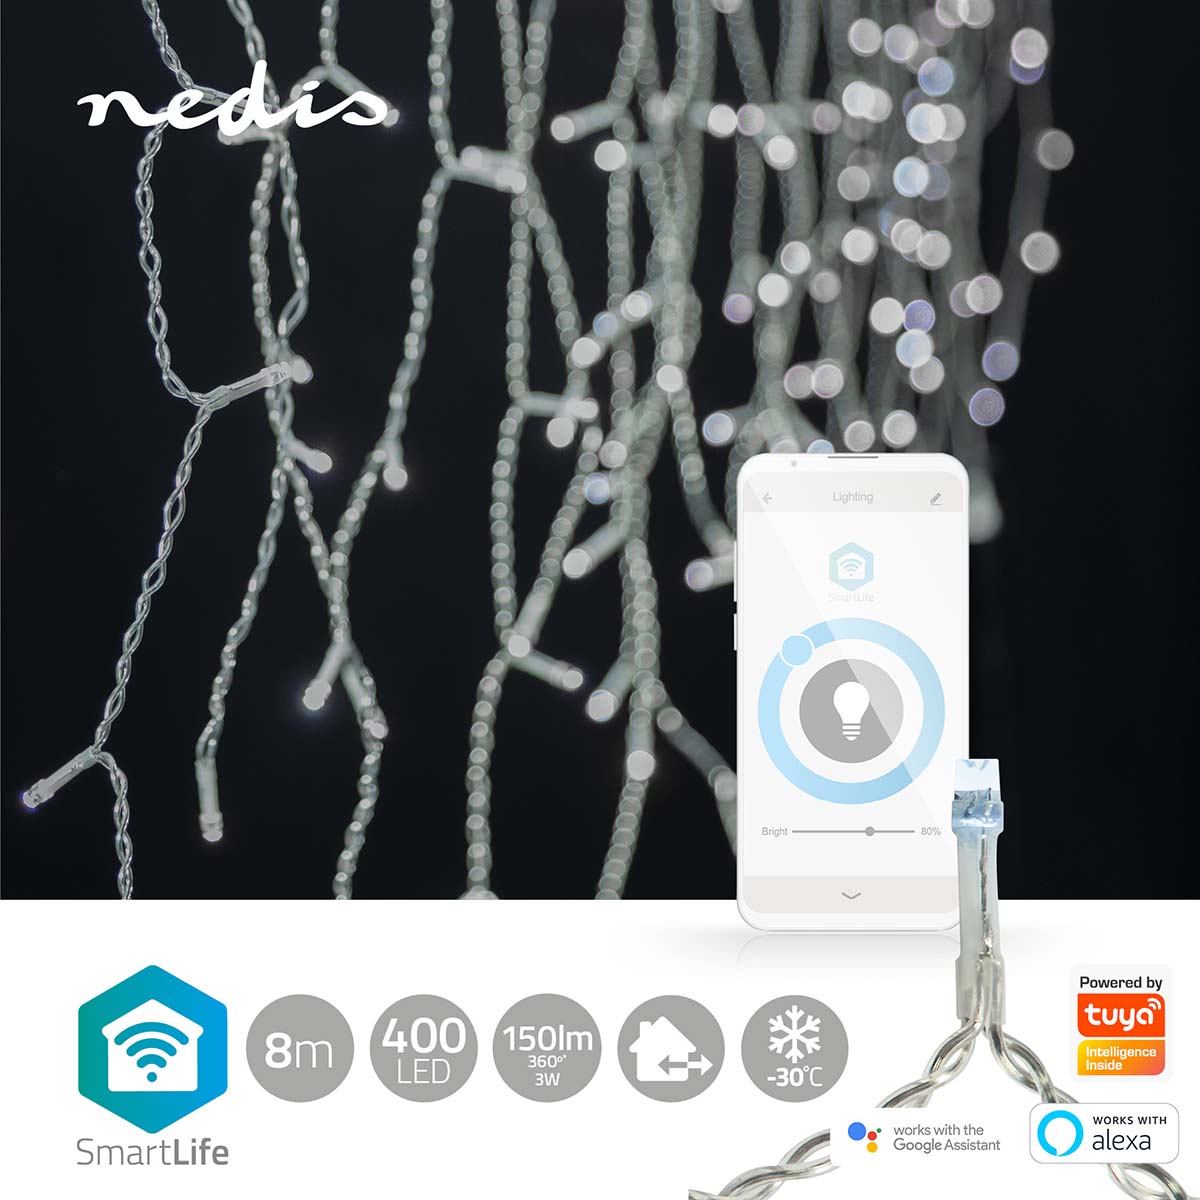 Grinalda Nedis 8m, 400 LEDs branco frio: iluminação inteligente para um Natal encantador, destacando-se pela sofisticação e versatilidade em 80 gotas.